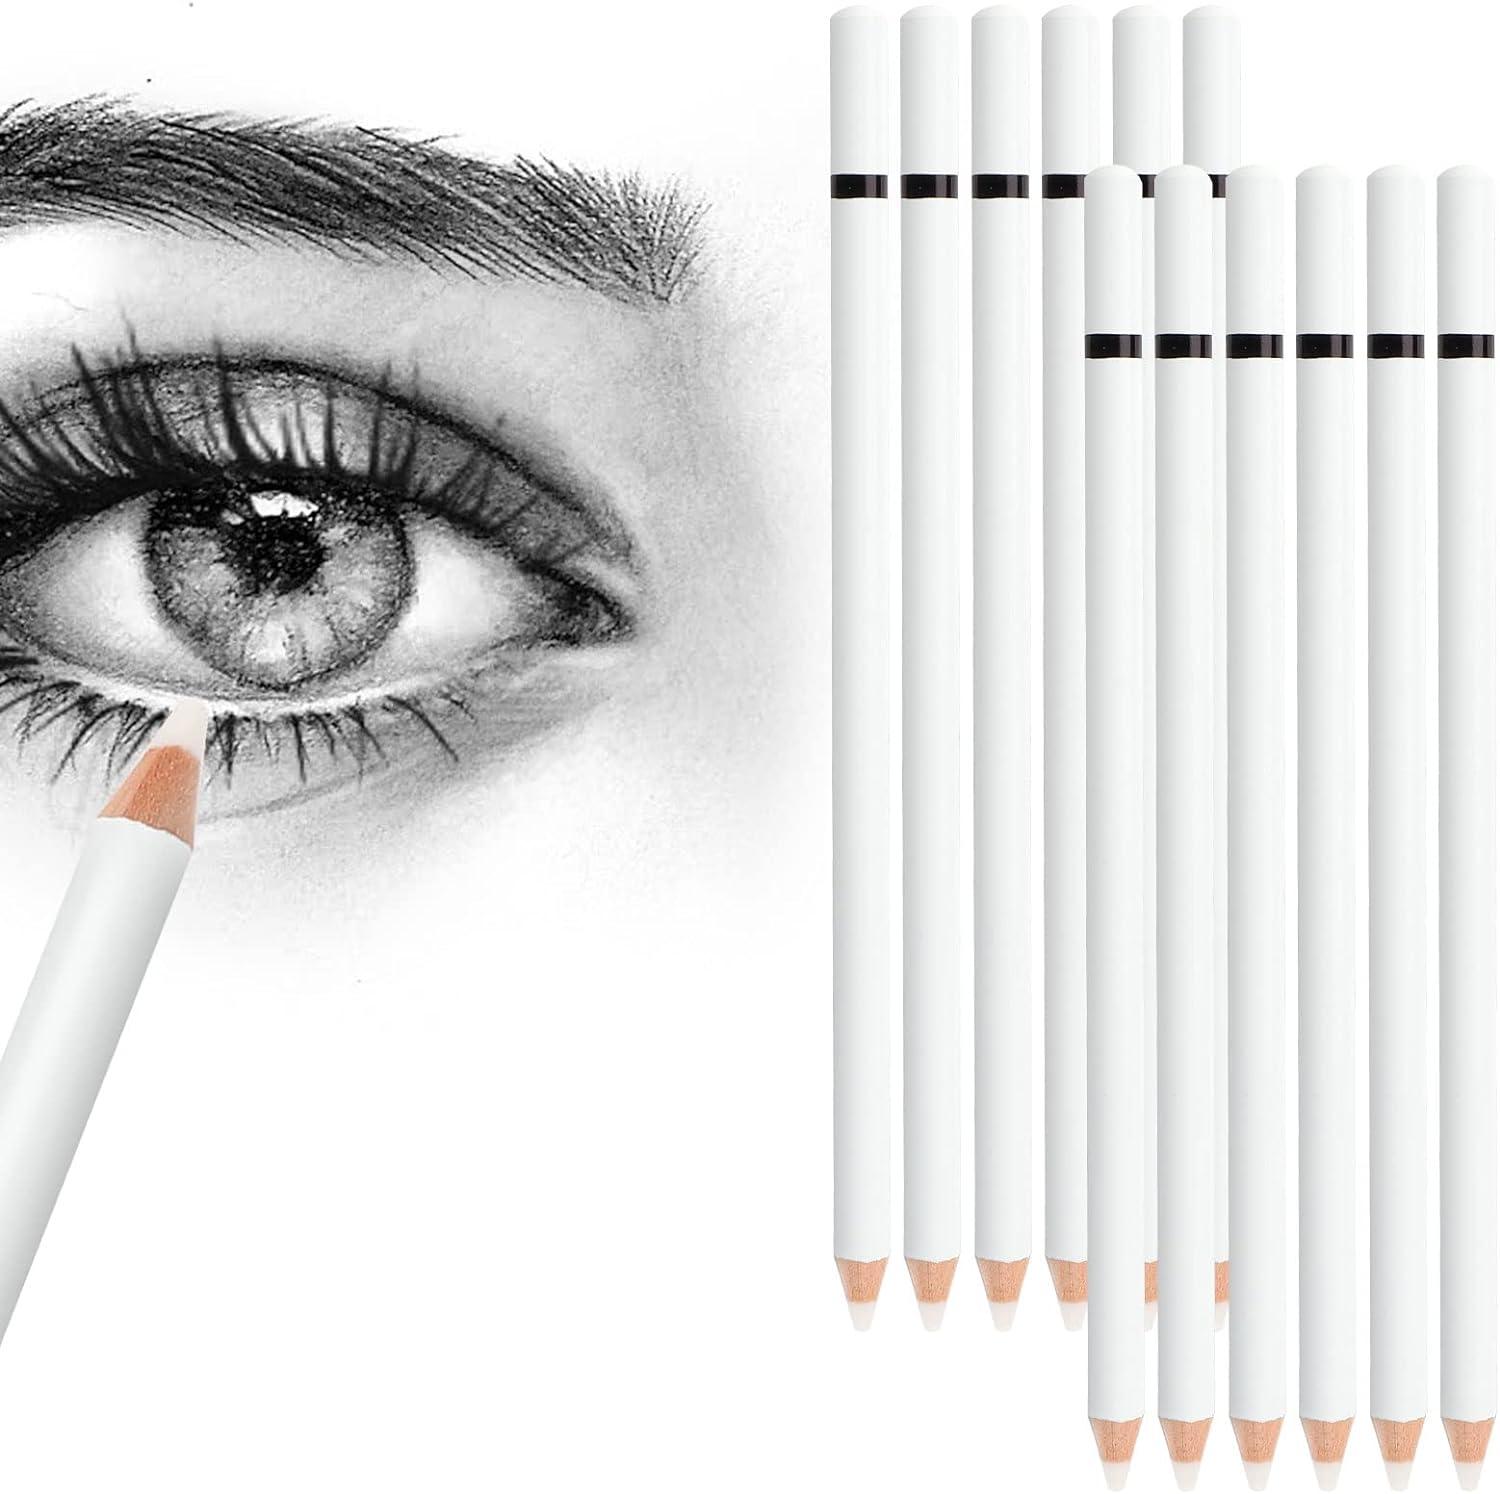 eraser pencils set for artist 12 pcs professional highlight eraser pen for sketching charcoal drawings erase